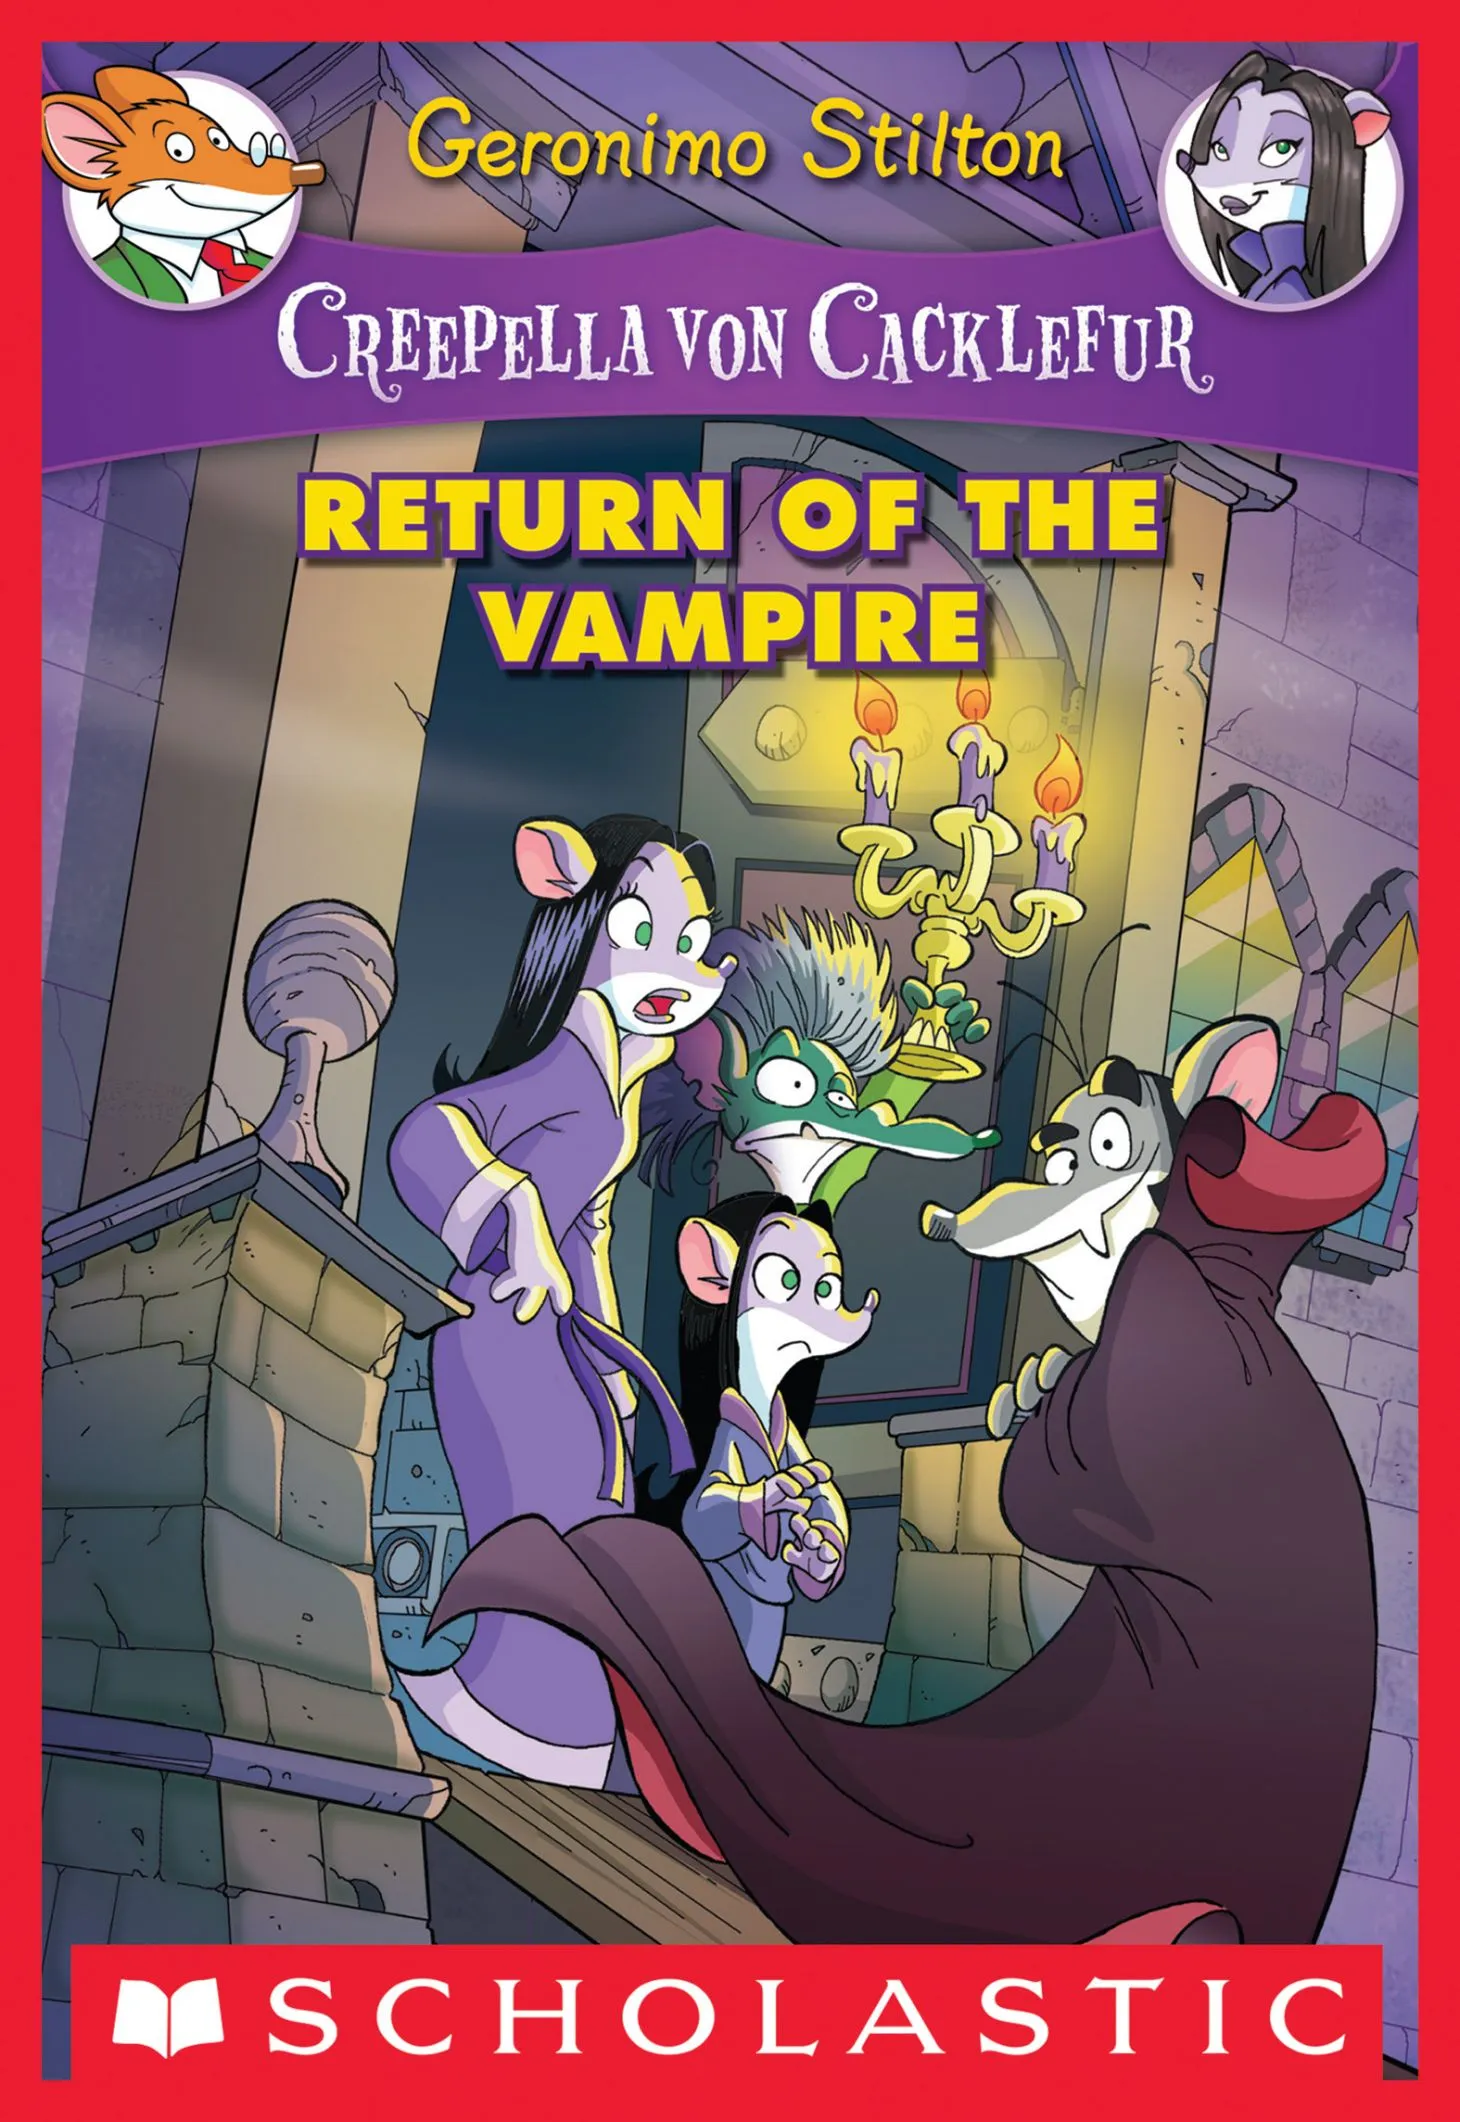 Return of the Vampire (Creepella von Cacklefur #4)